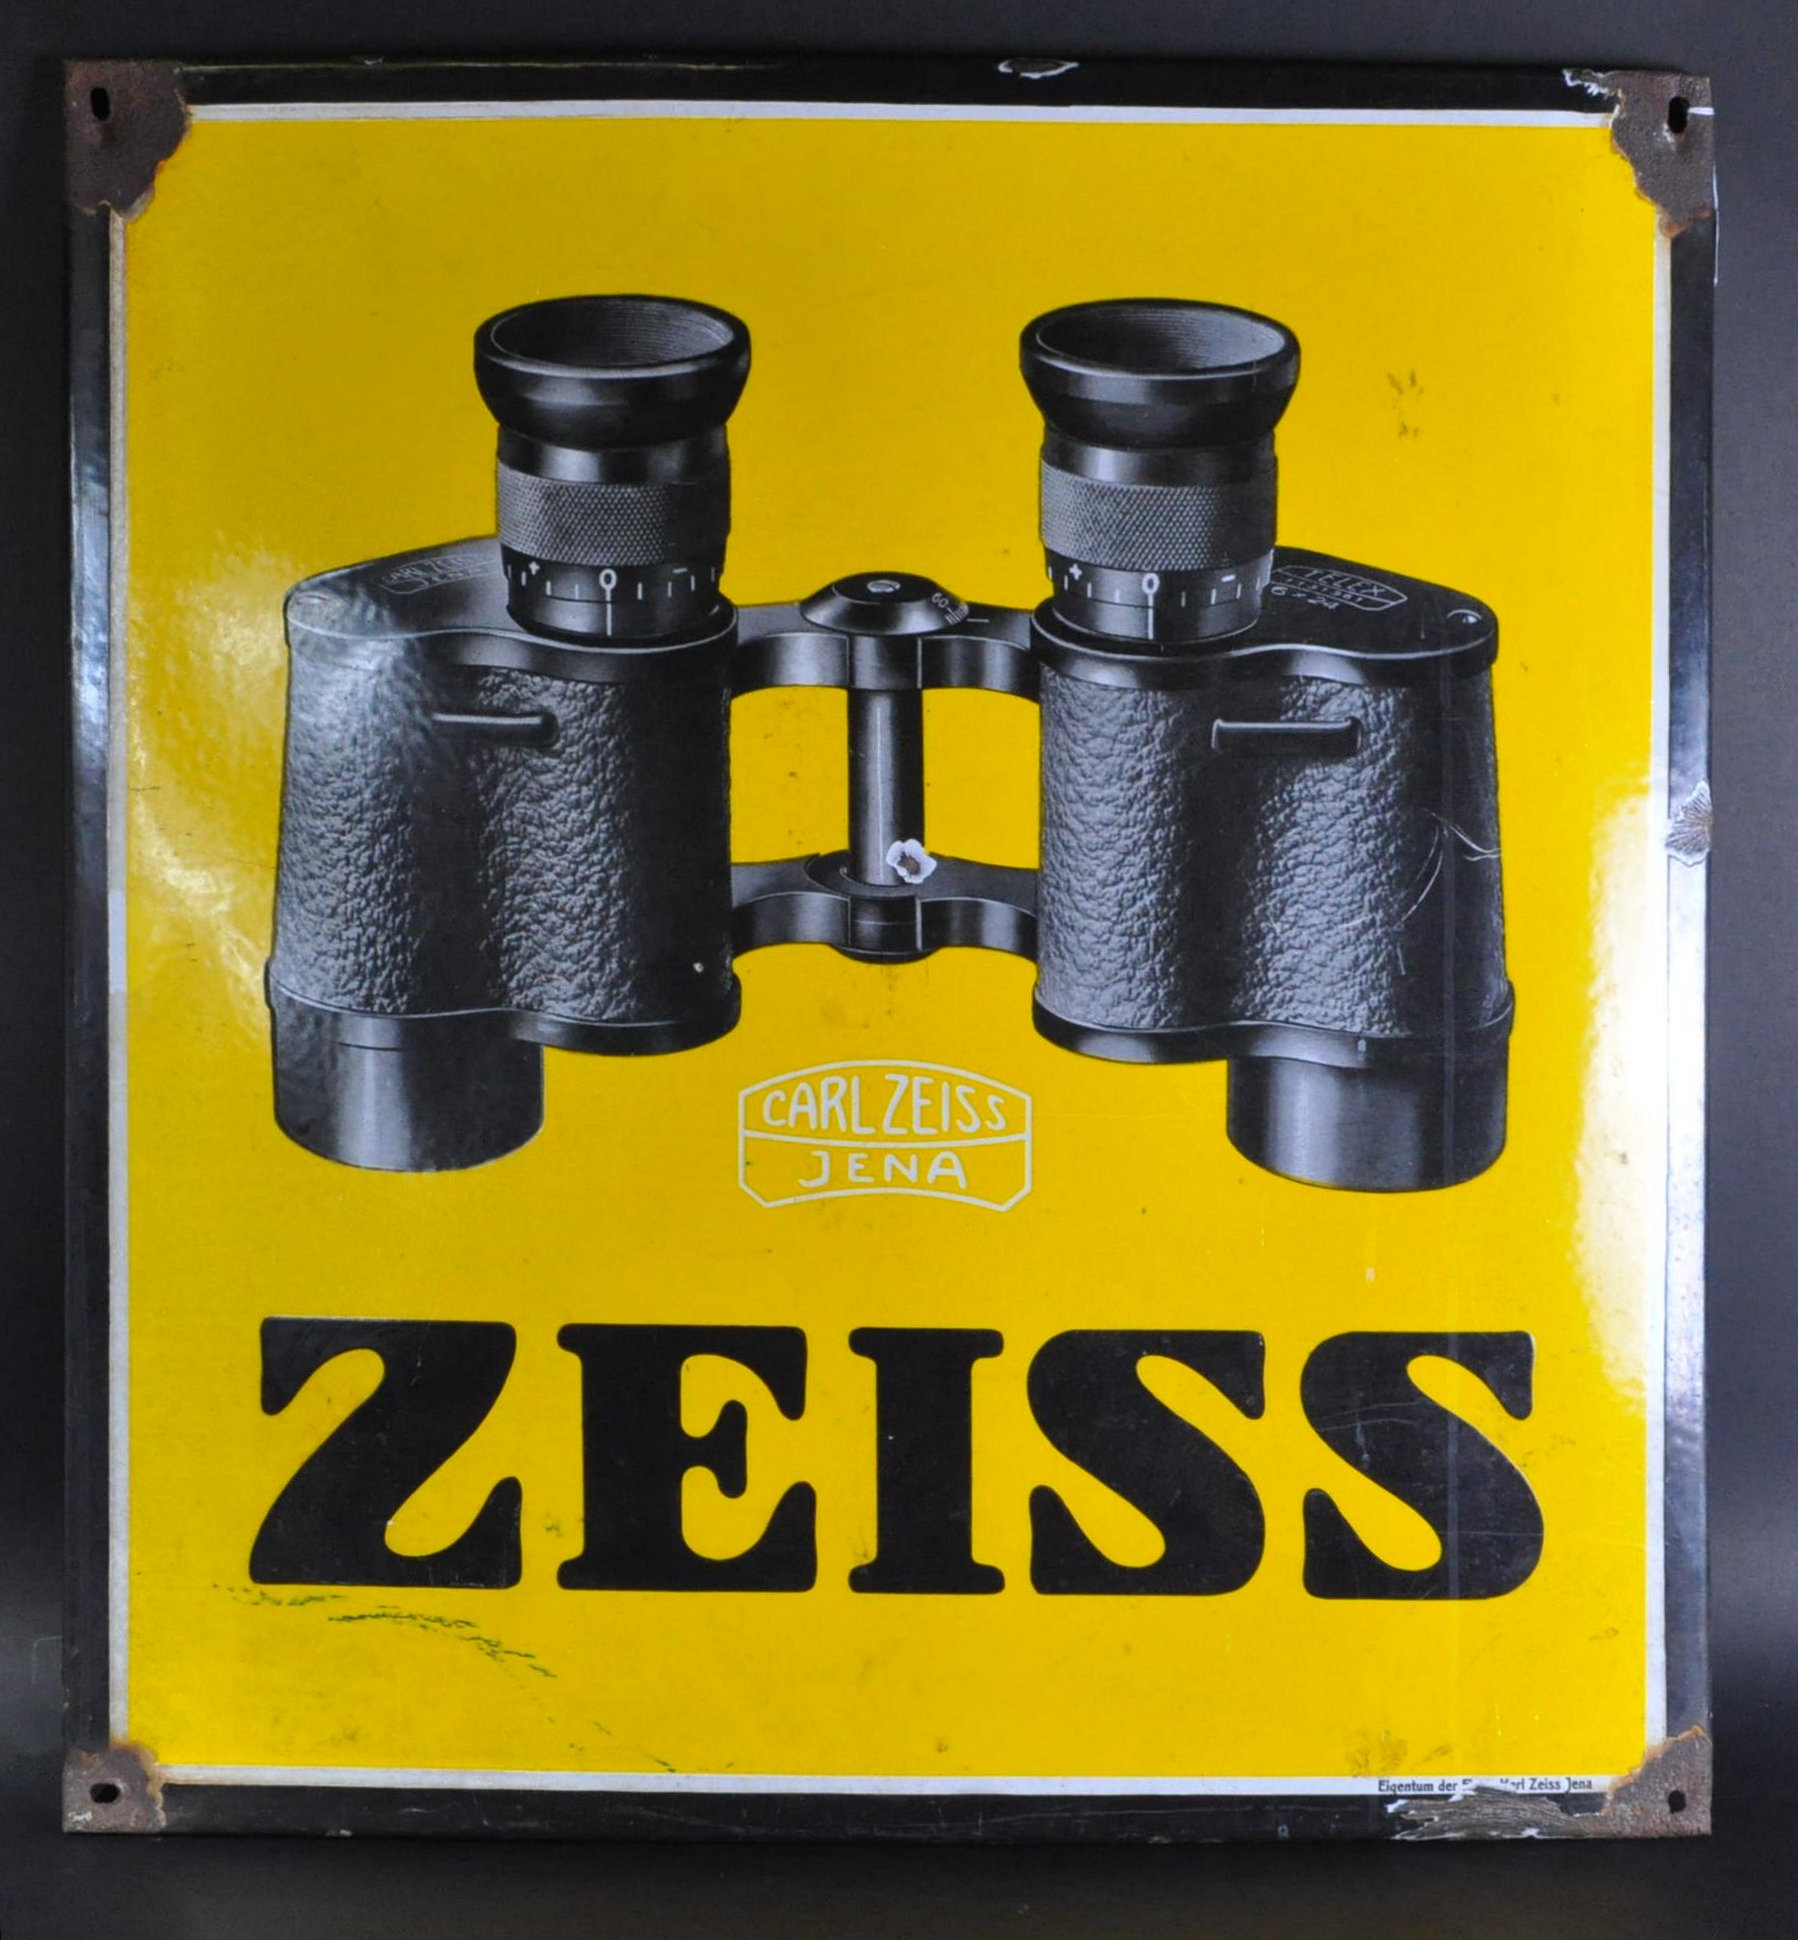 CARL ZEISS - ZEISS - ORIGINAL C1930S ENAMEL ADVERTISING SIGN